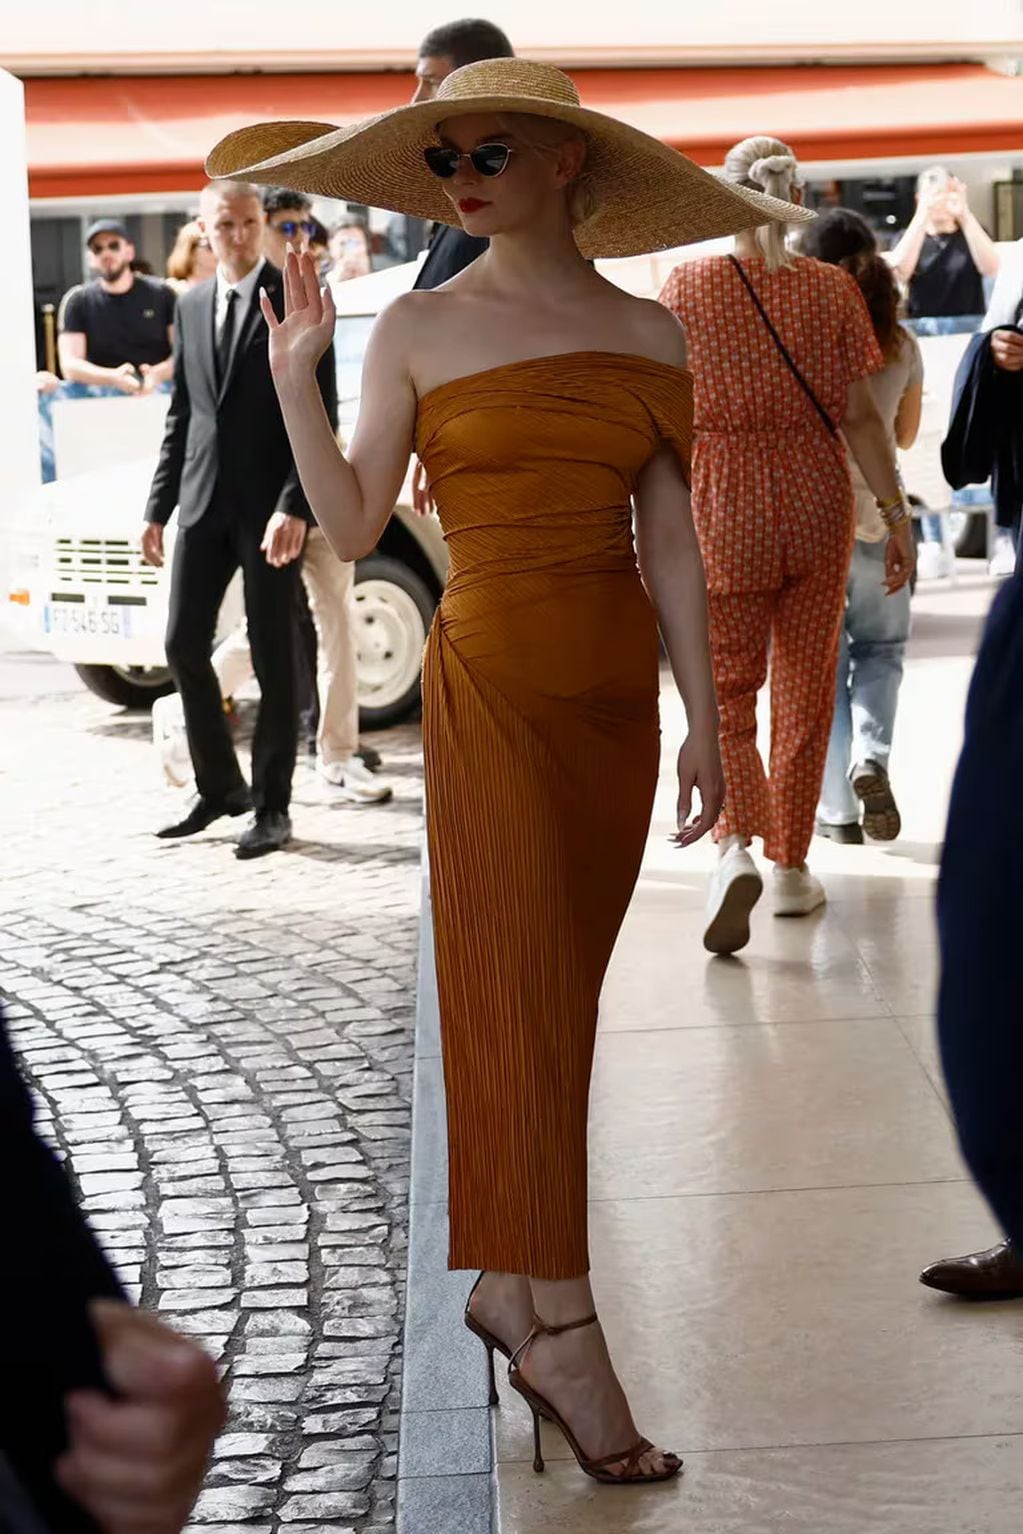 El incómodo momento de Anya Taylor-Joy en Cannes. / Gentileza